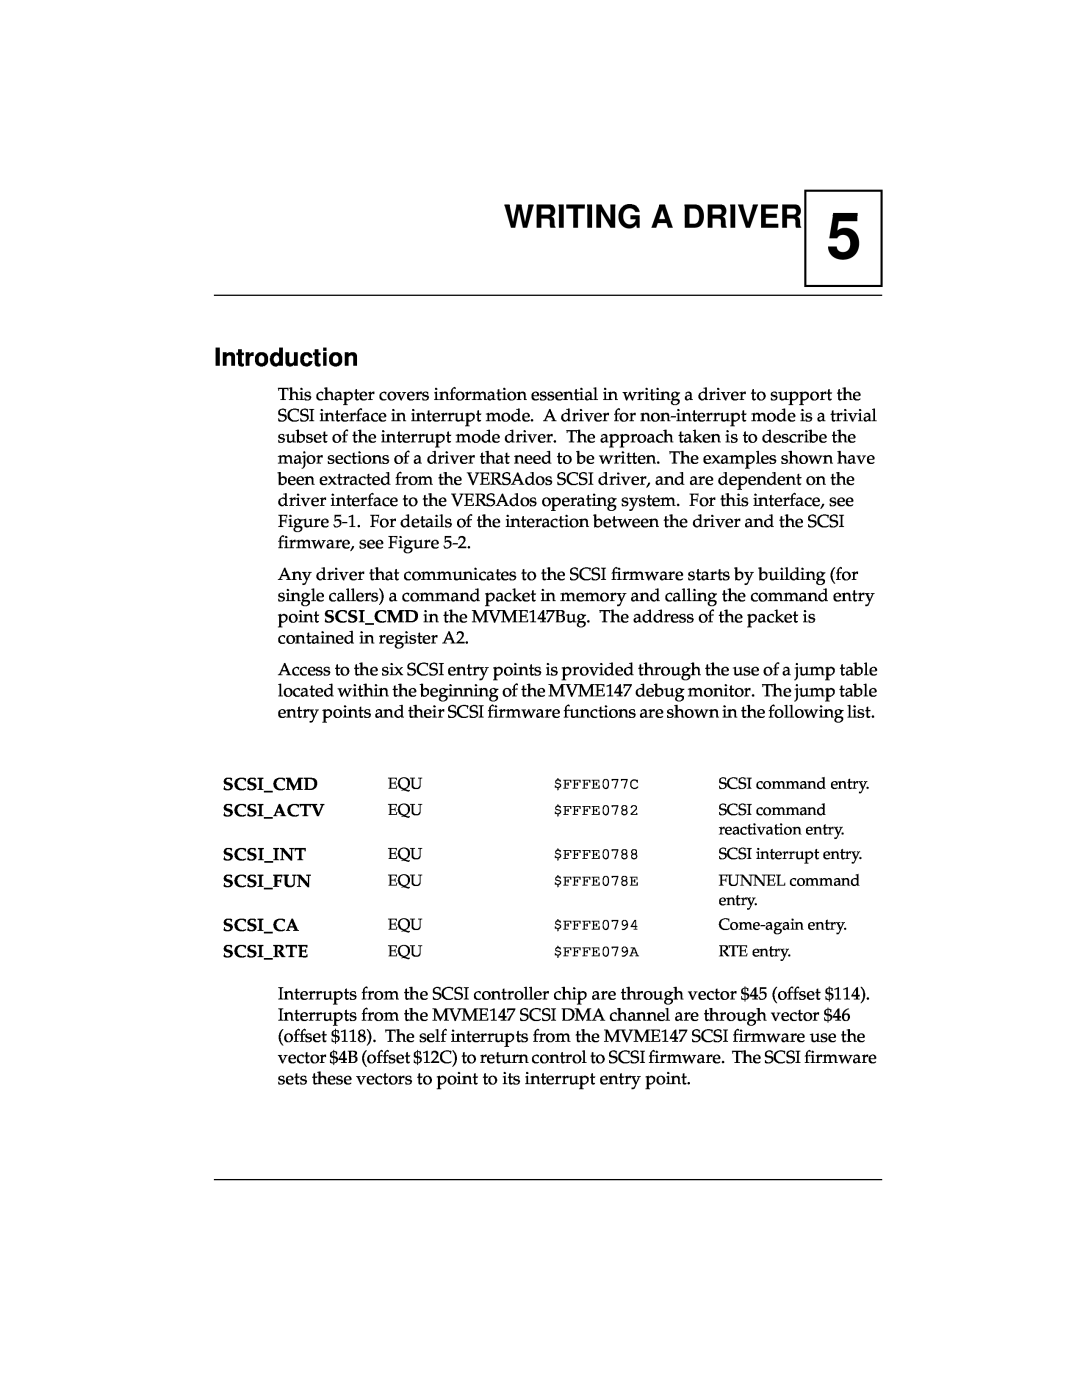 Emerson MVME147 manual Writing A Driver, Scsi_Cmd, Scsi_Actv, Scsi_Int, Scsi_Fun, Scsi_Ca, Scsi_Rte, Introduction 